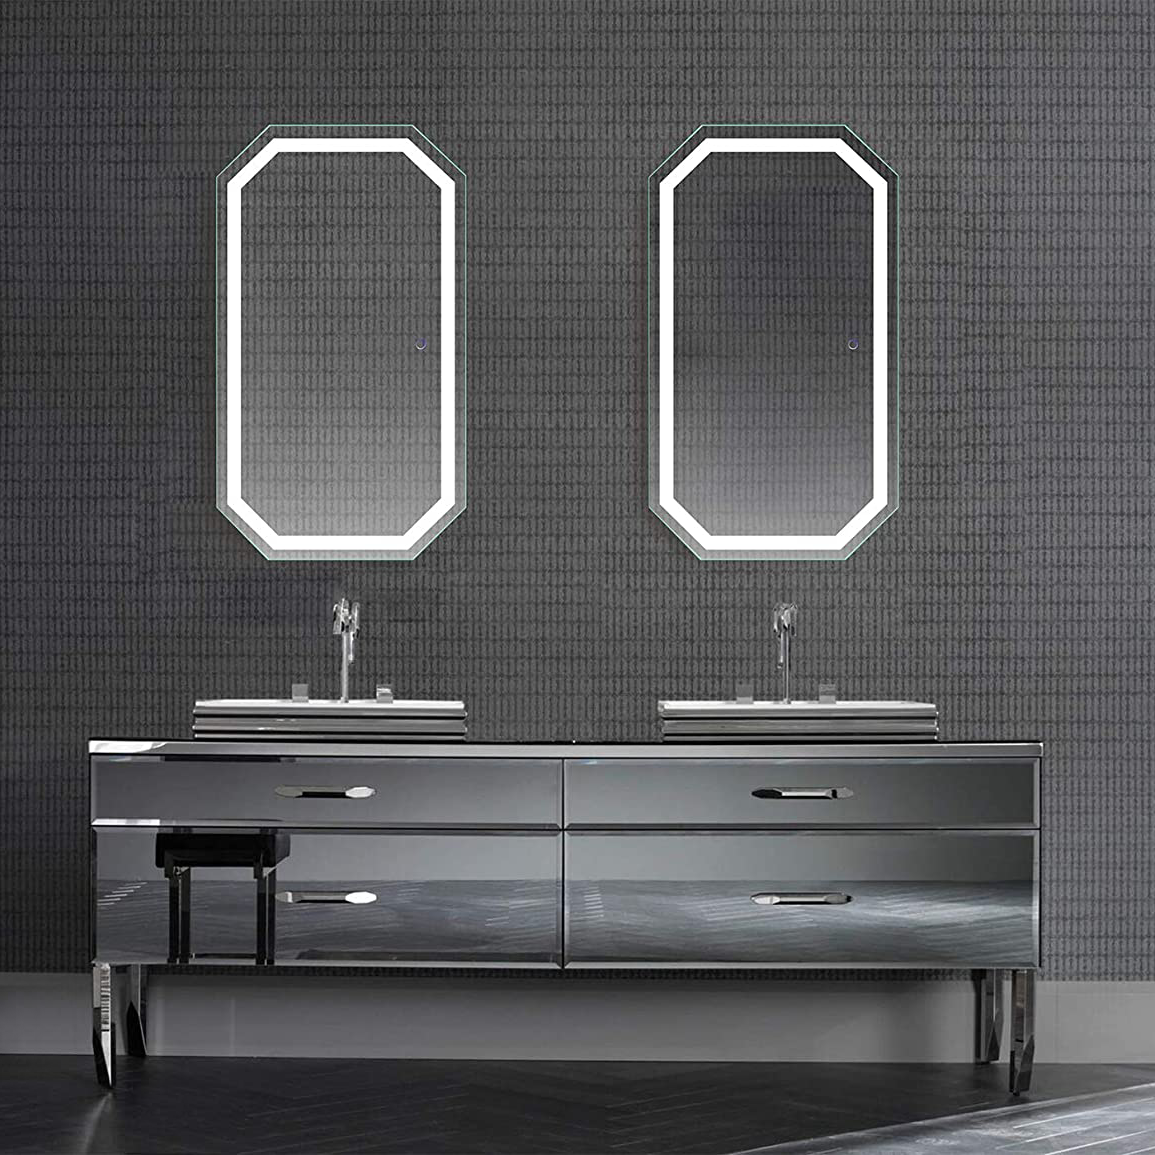 Octagon Shape LED Bathroom Wall Mirror with Anti-fog